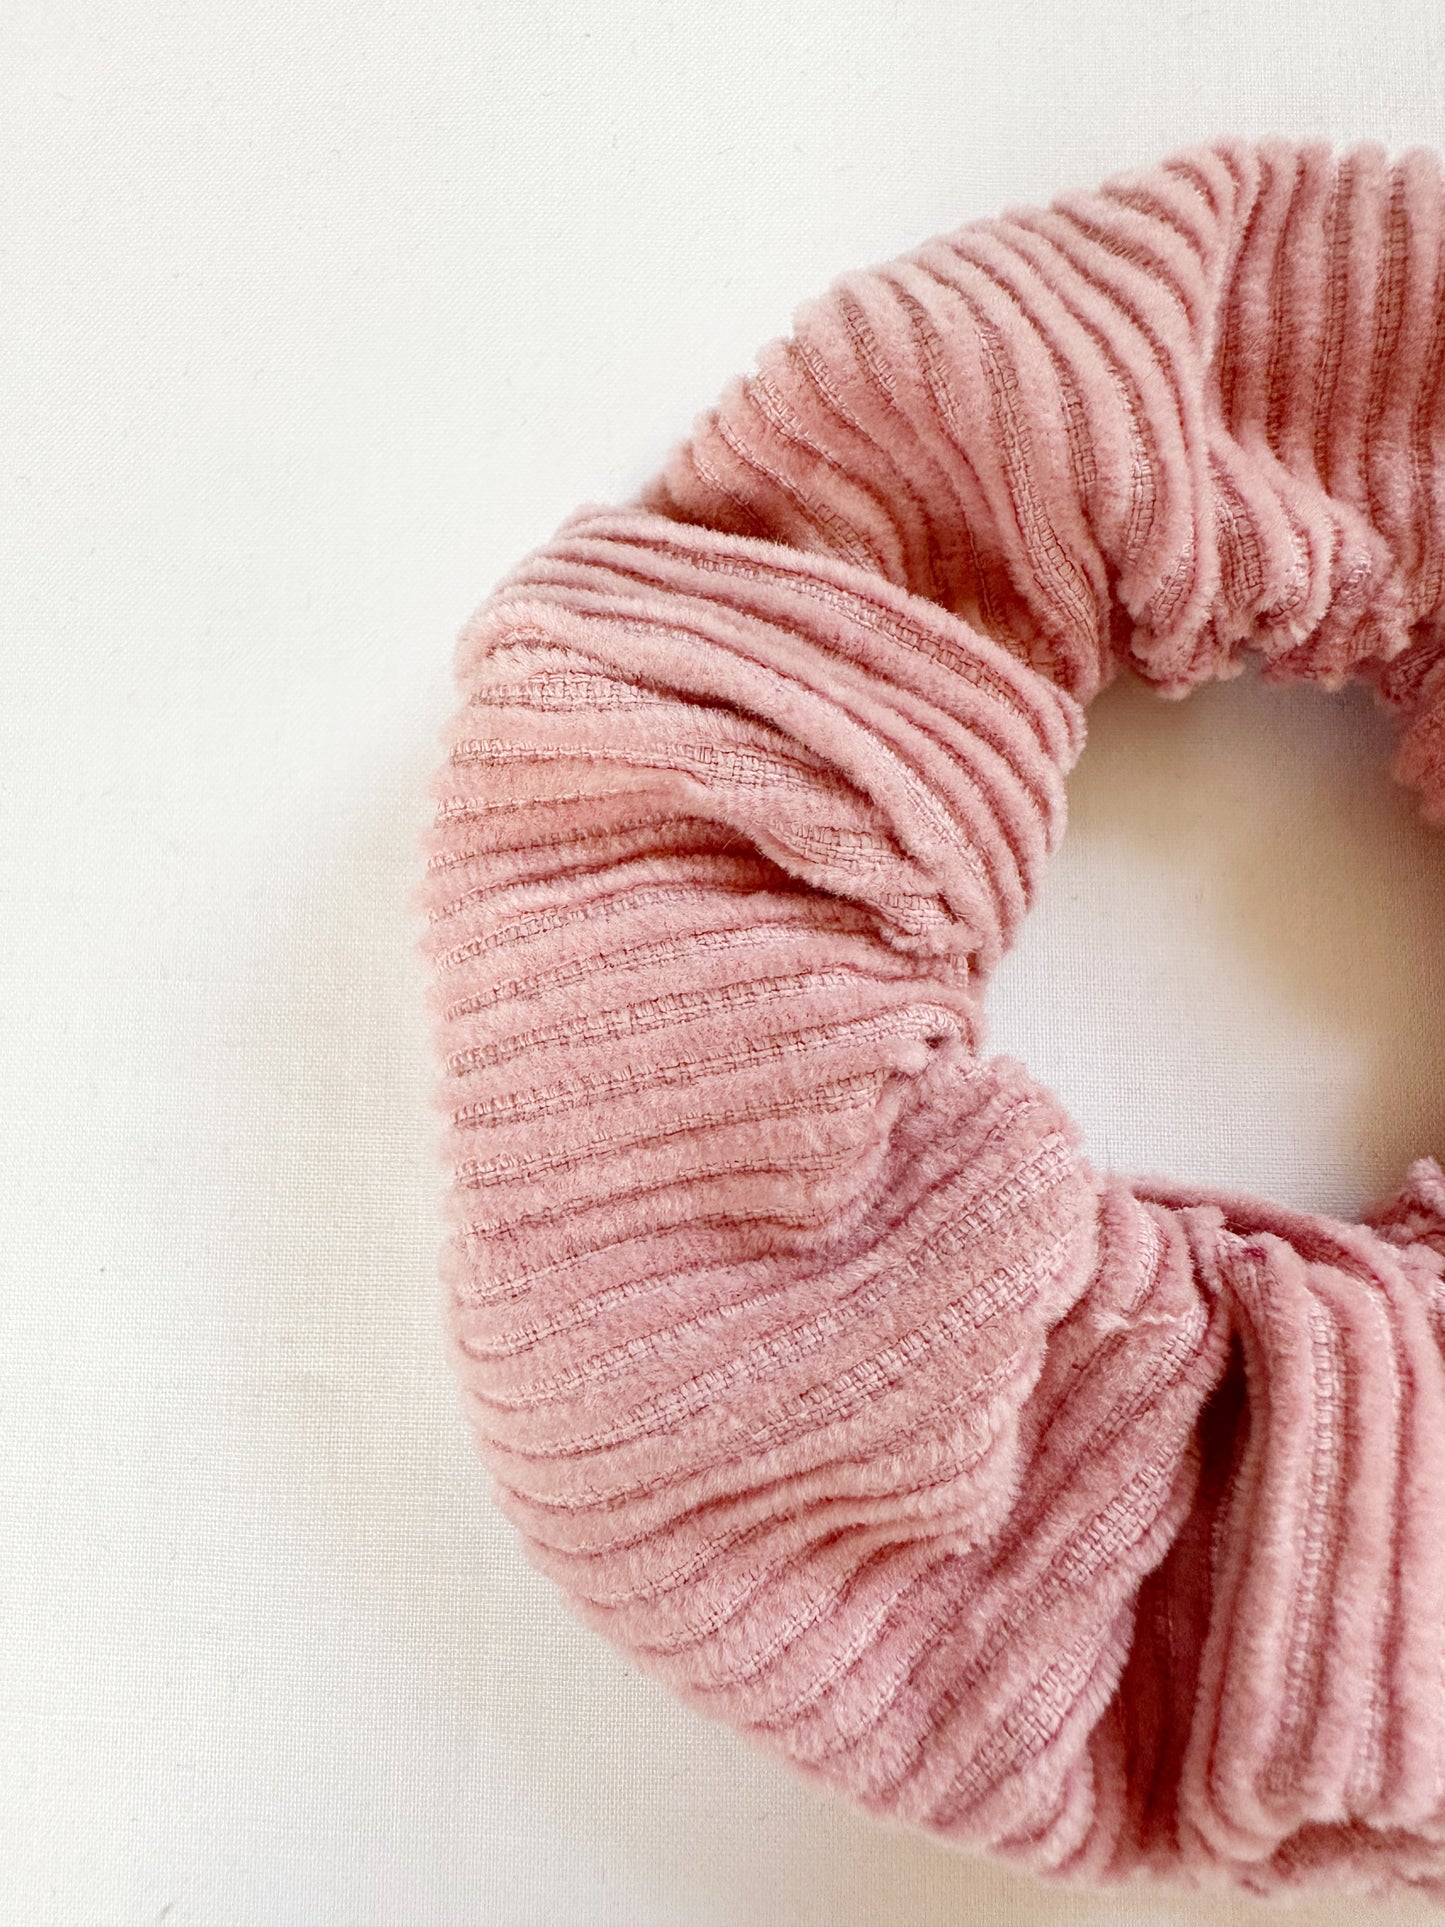 Mini scrunchie in blush pink cord